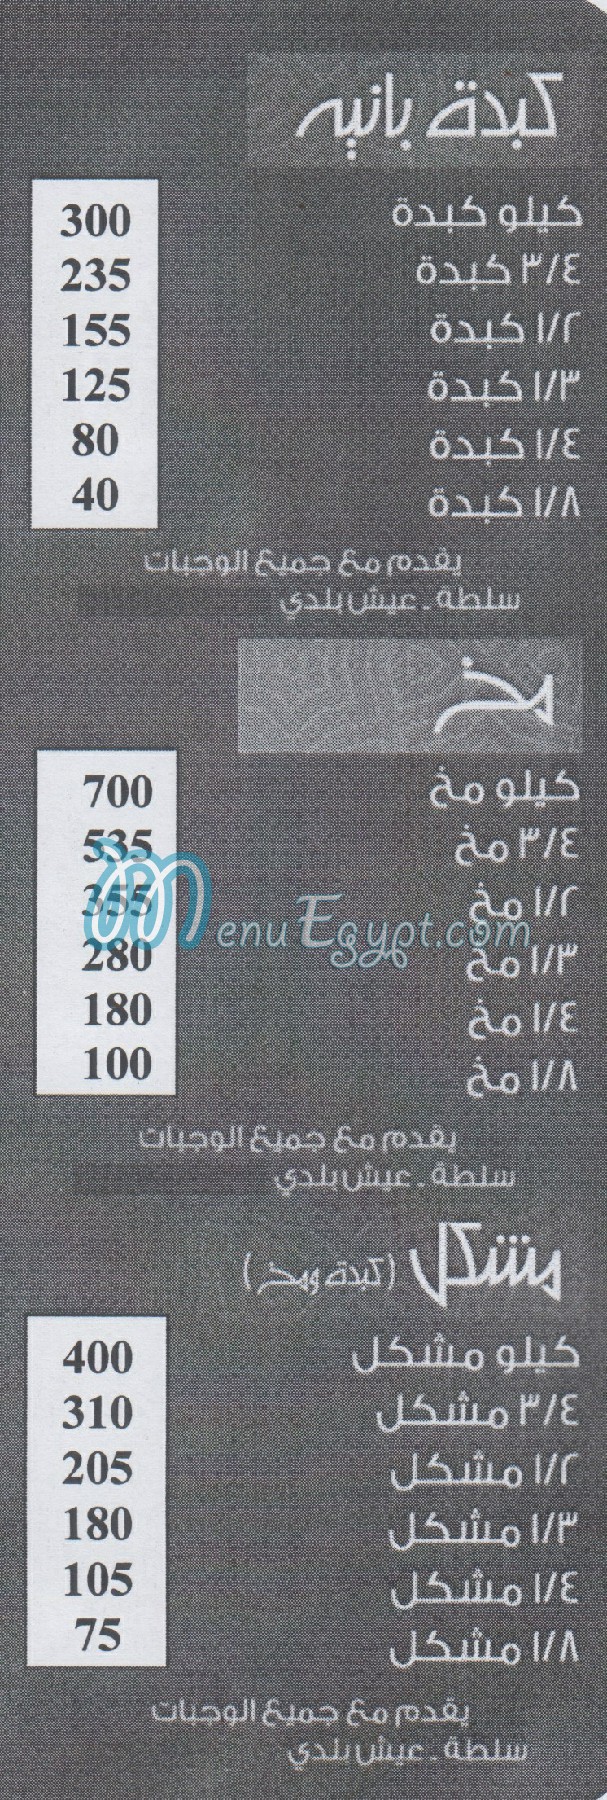 Awlad El Sharqawy Mokattam menu Egypt